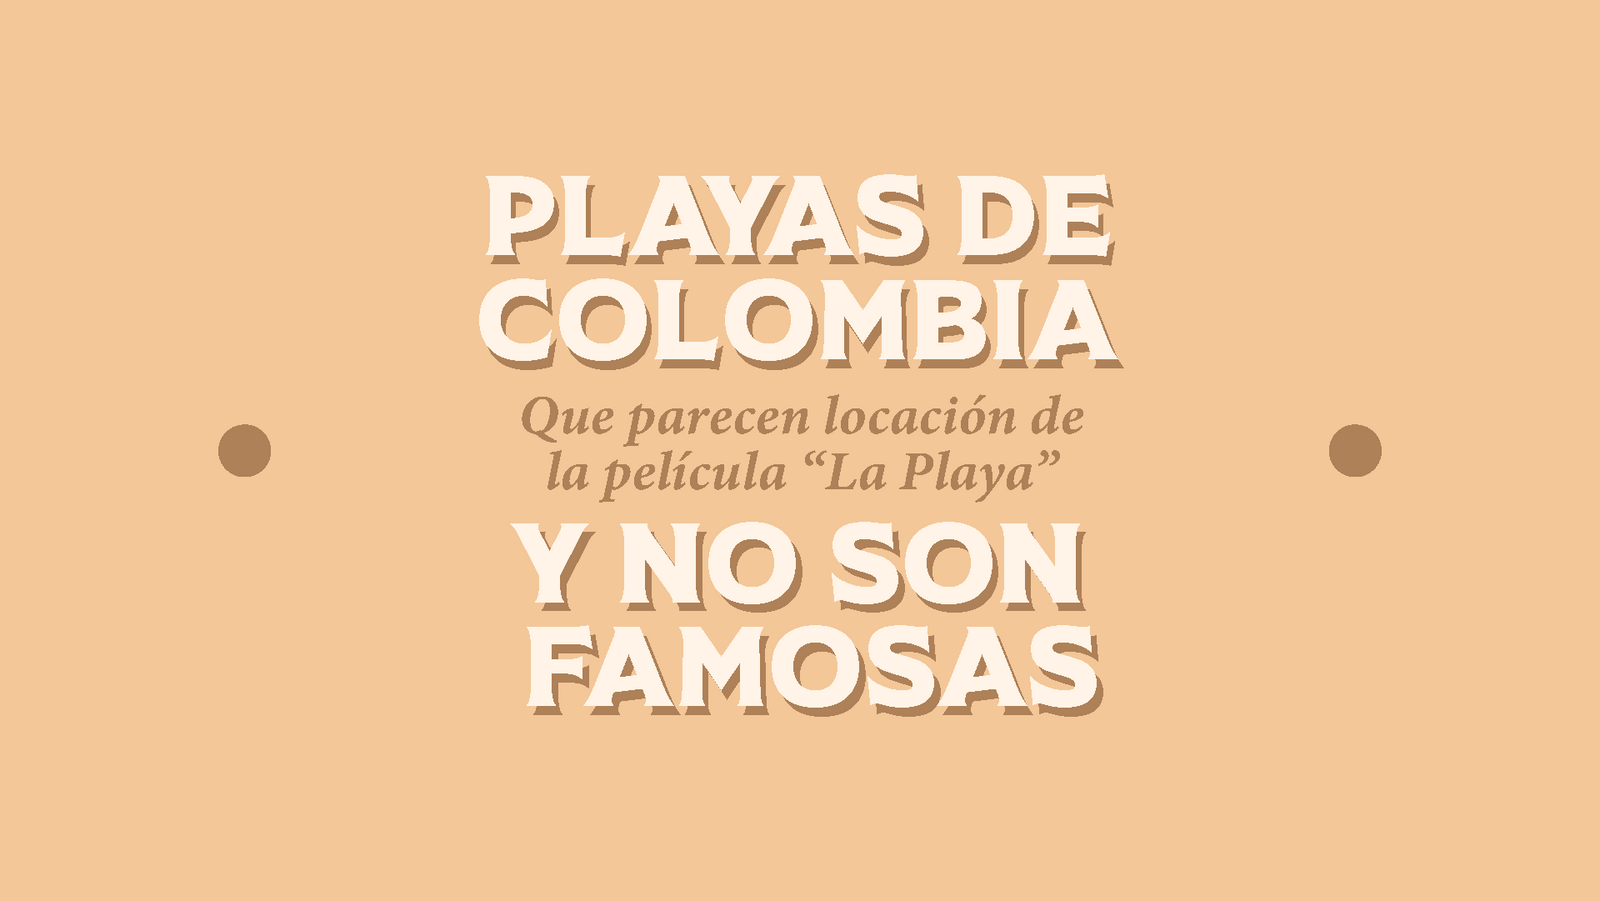 Playas de Colombia que parecen locaciones de la pelicular "La Playa" y no son famosas